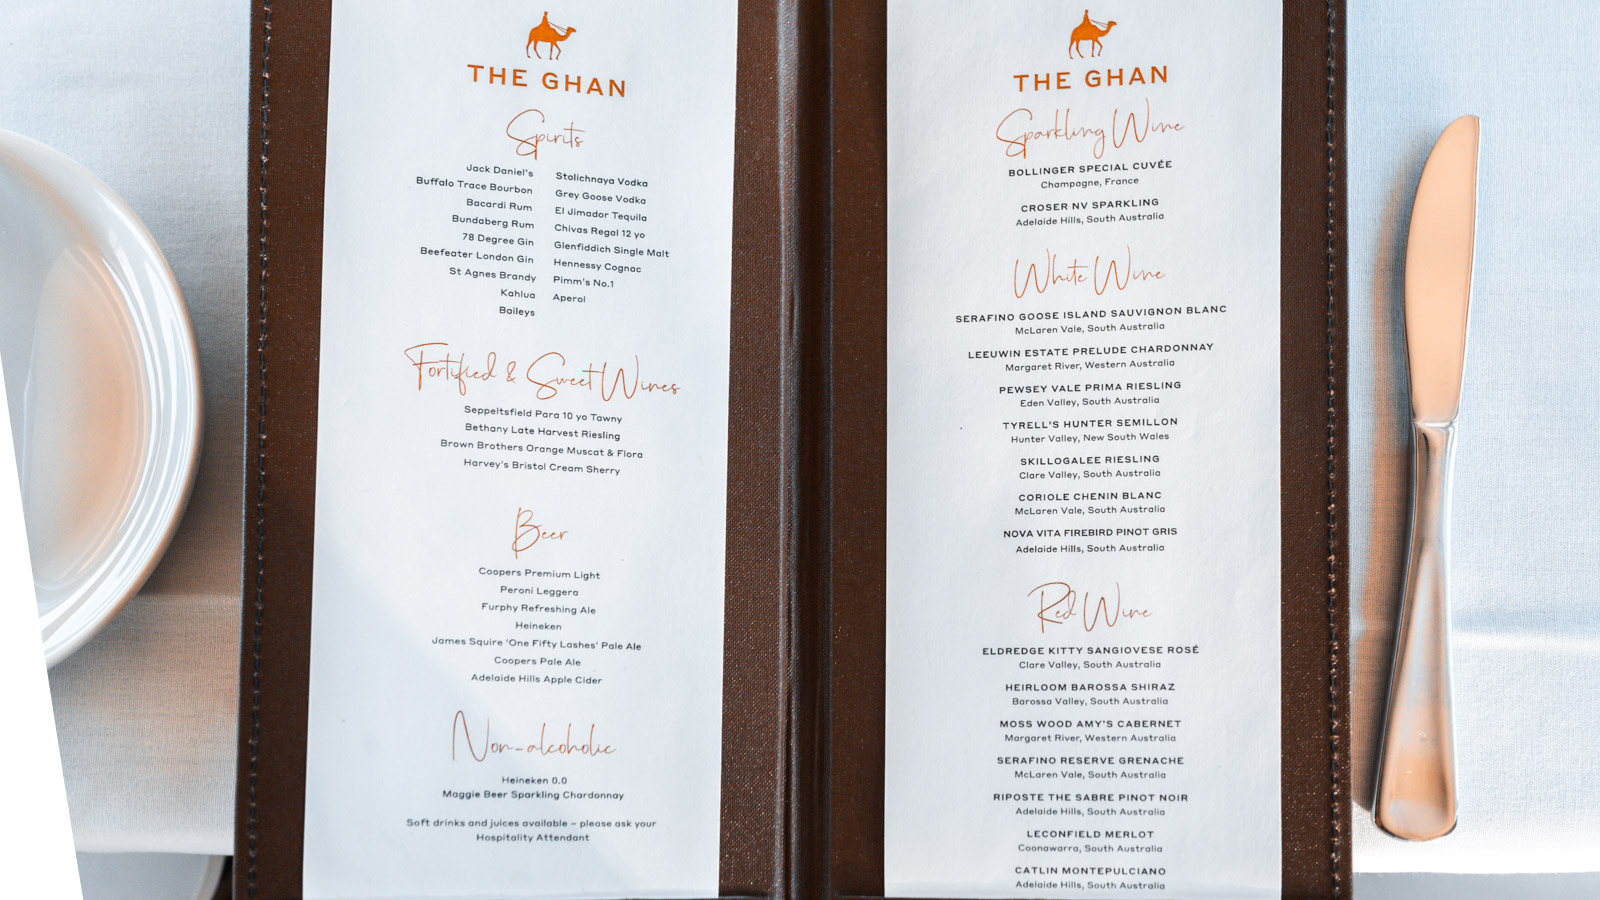 The Ghan Platinum drinks menu